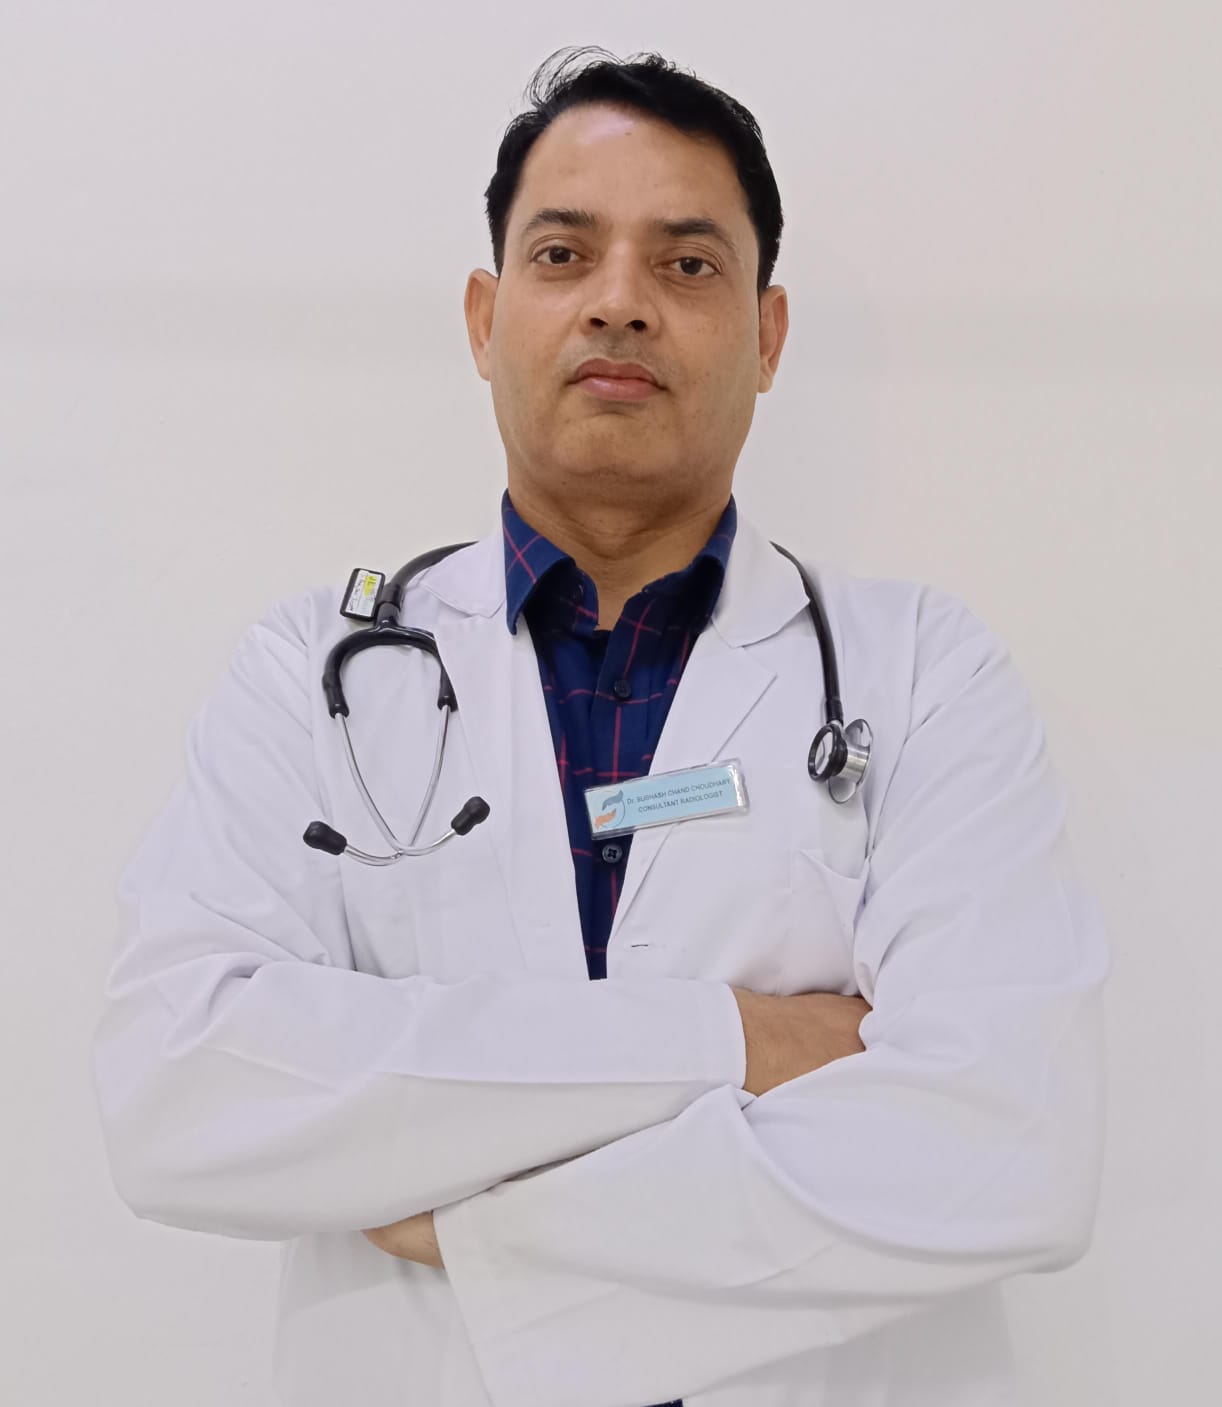 Dr. Subhash Chand Choudhary